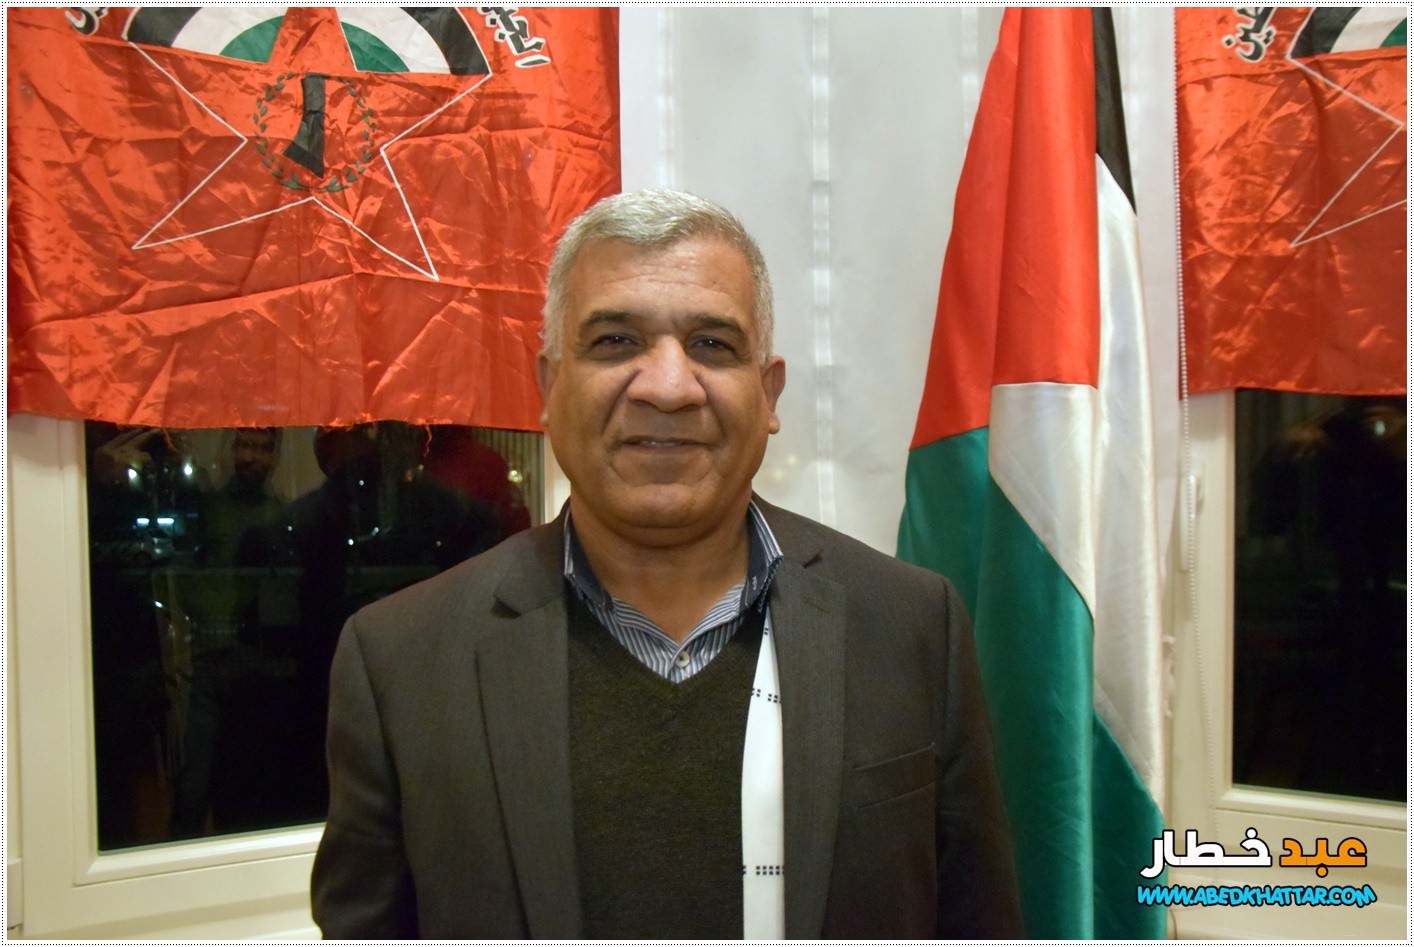 احياء حفل الذكرى الواحدة والخمسين لإنطلاقة الجبهة الديمقراطية لتحرير فلسطين